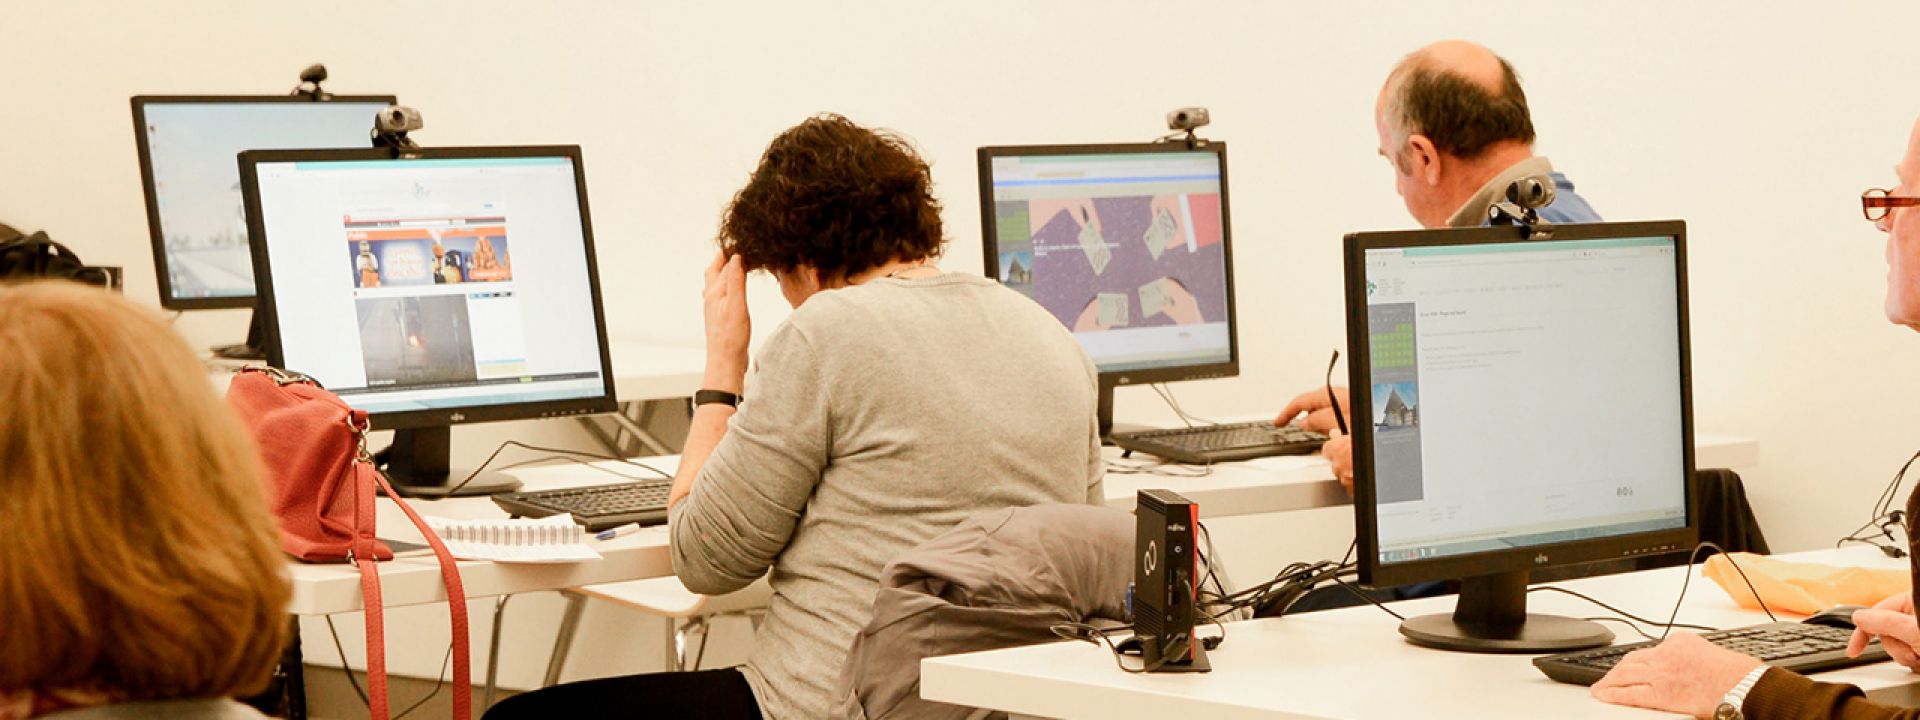 Φωτογραφία που απεικονίζει άτομα μέσα στην Αίθουσα Υπολογιστών